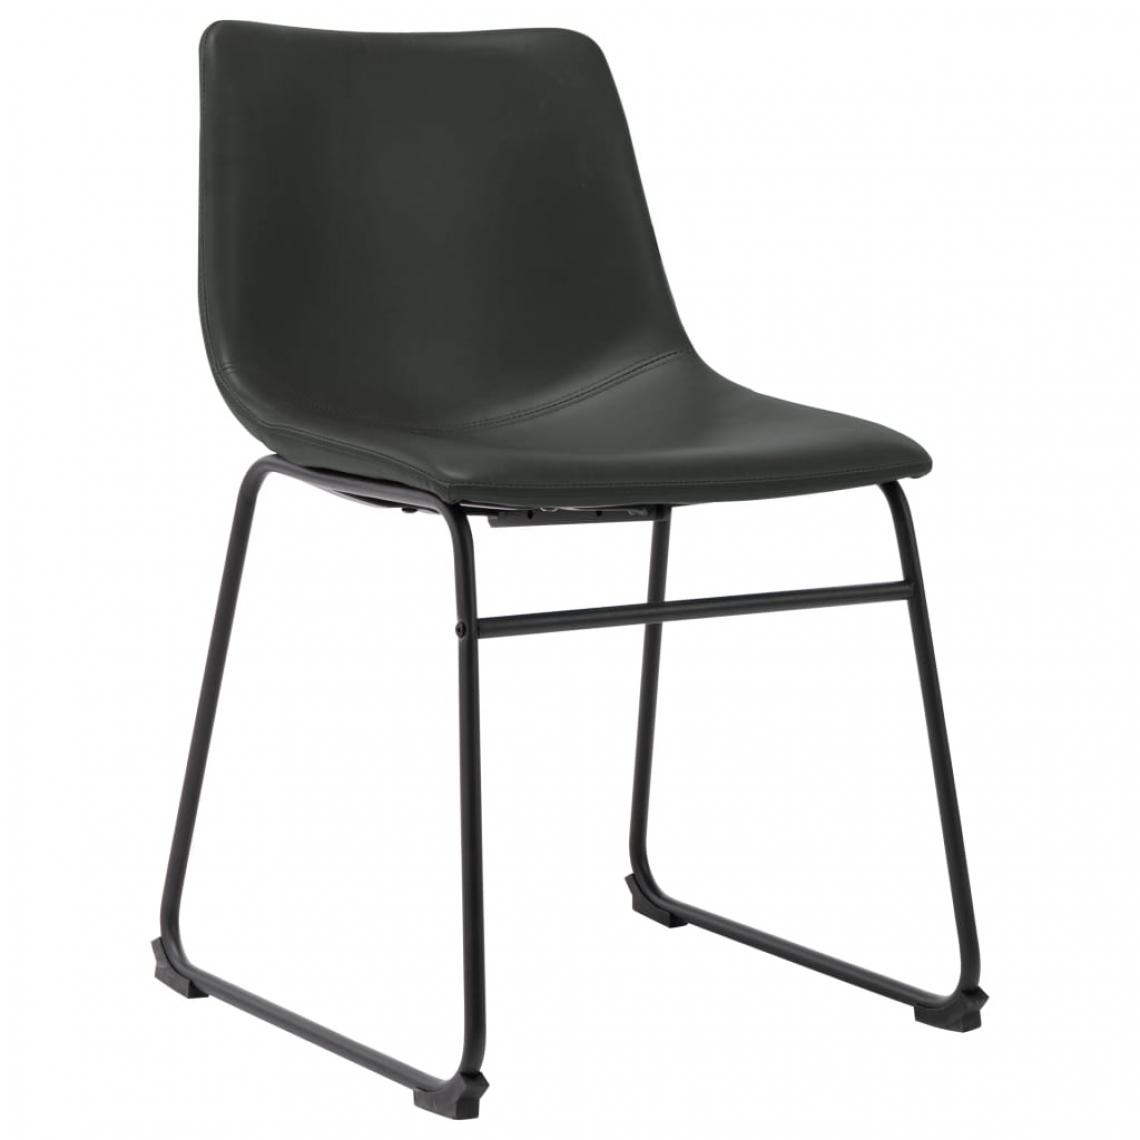 Decoshop26 - Chaise de salle à manger design simple cadre en acier en similicuir gris CDS020044 - Chaises